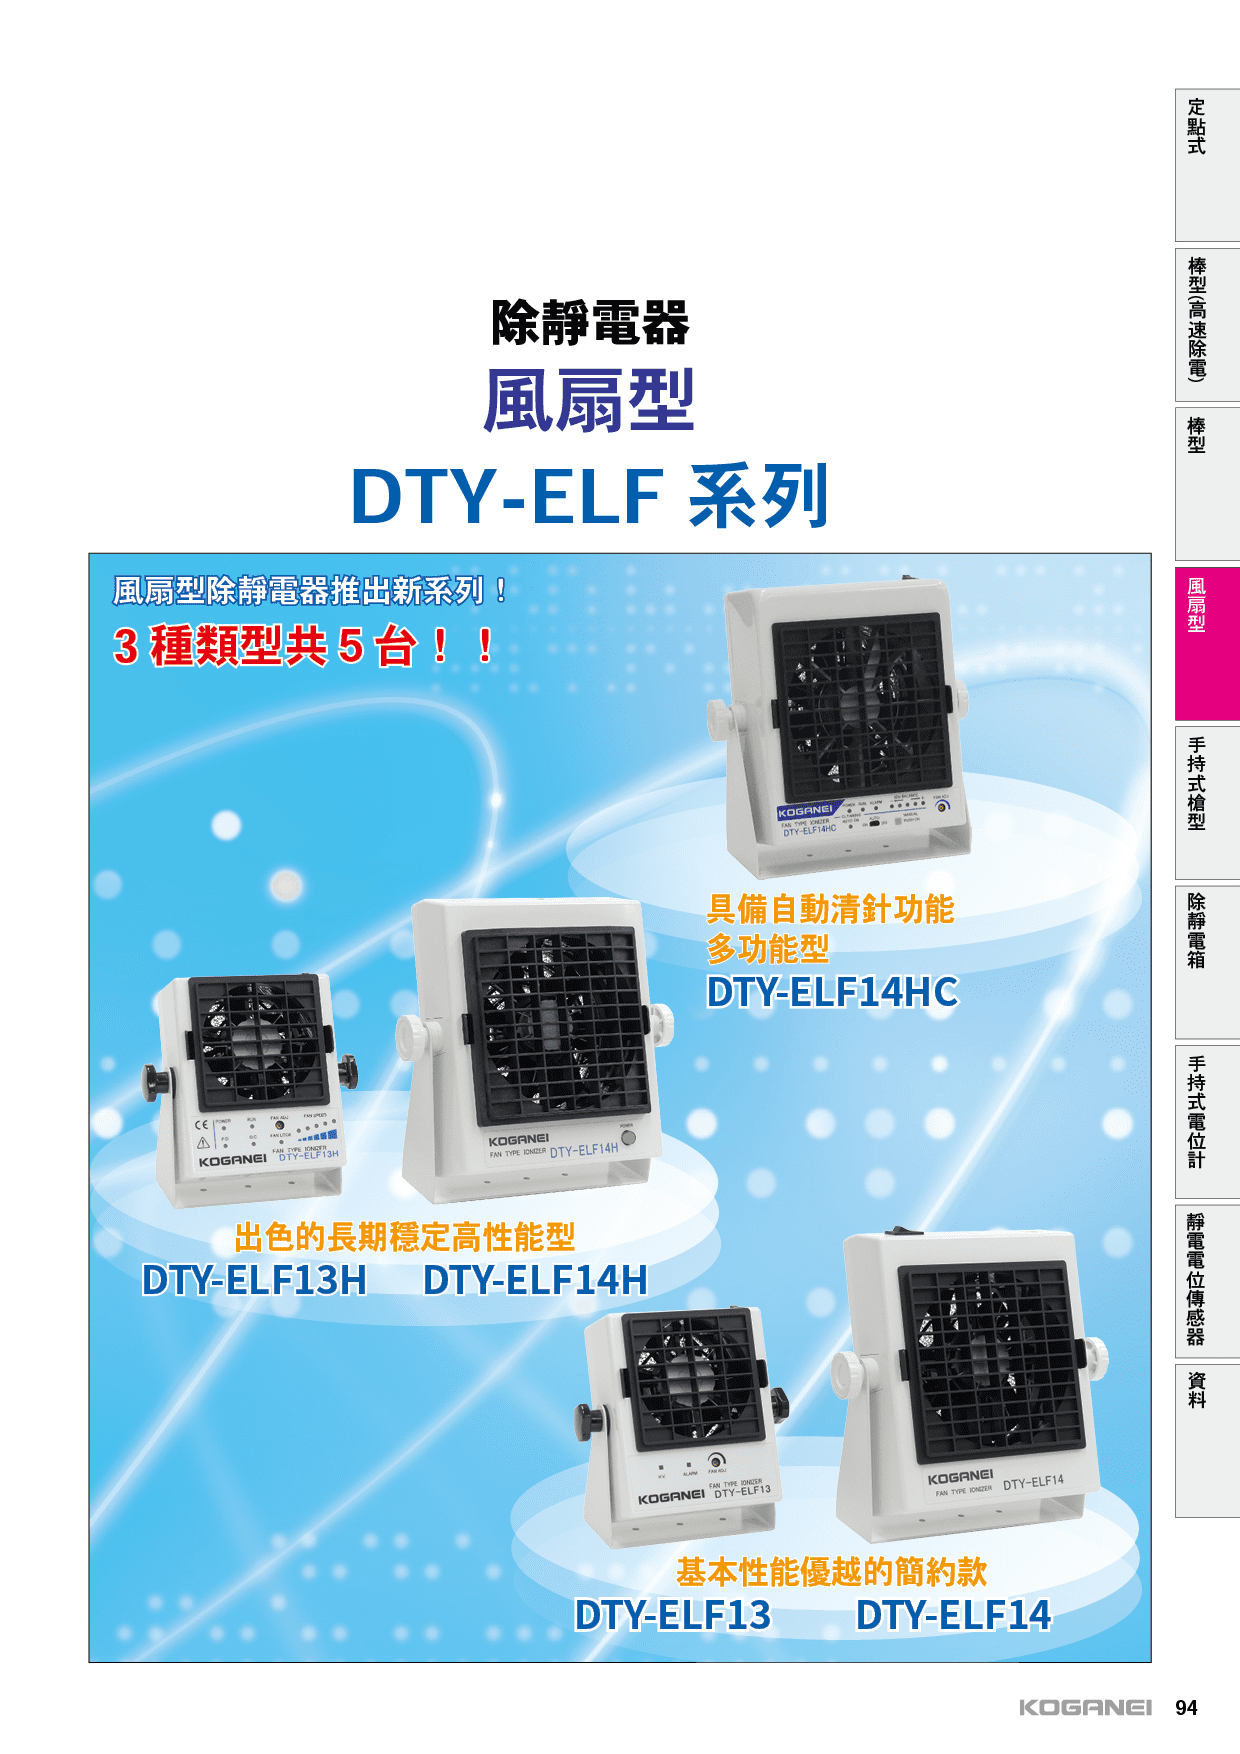 除靜電風扇-ELF系列-產品特色1